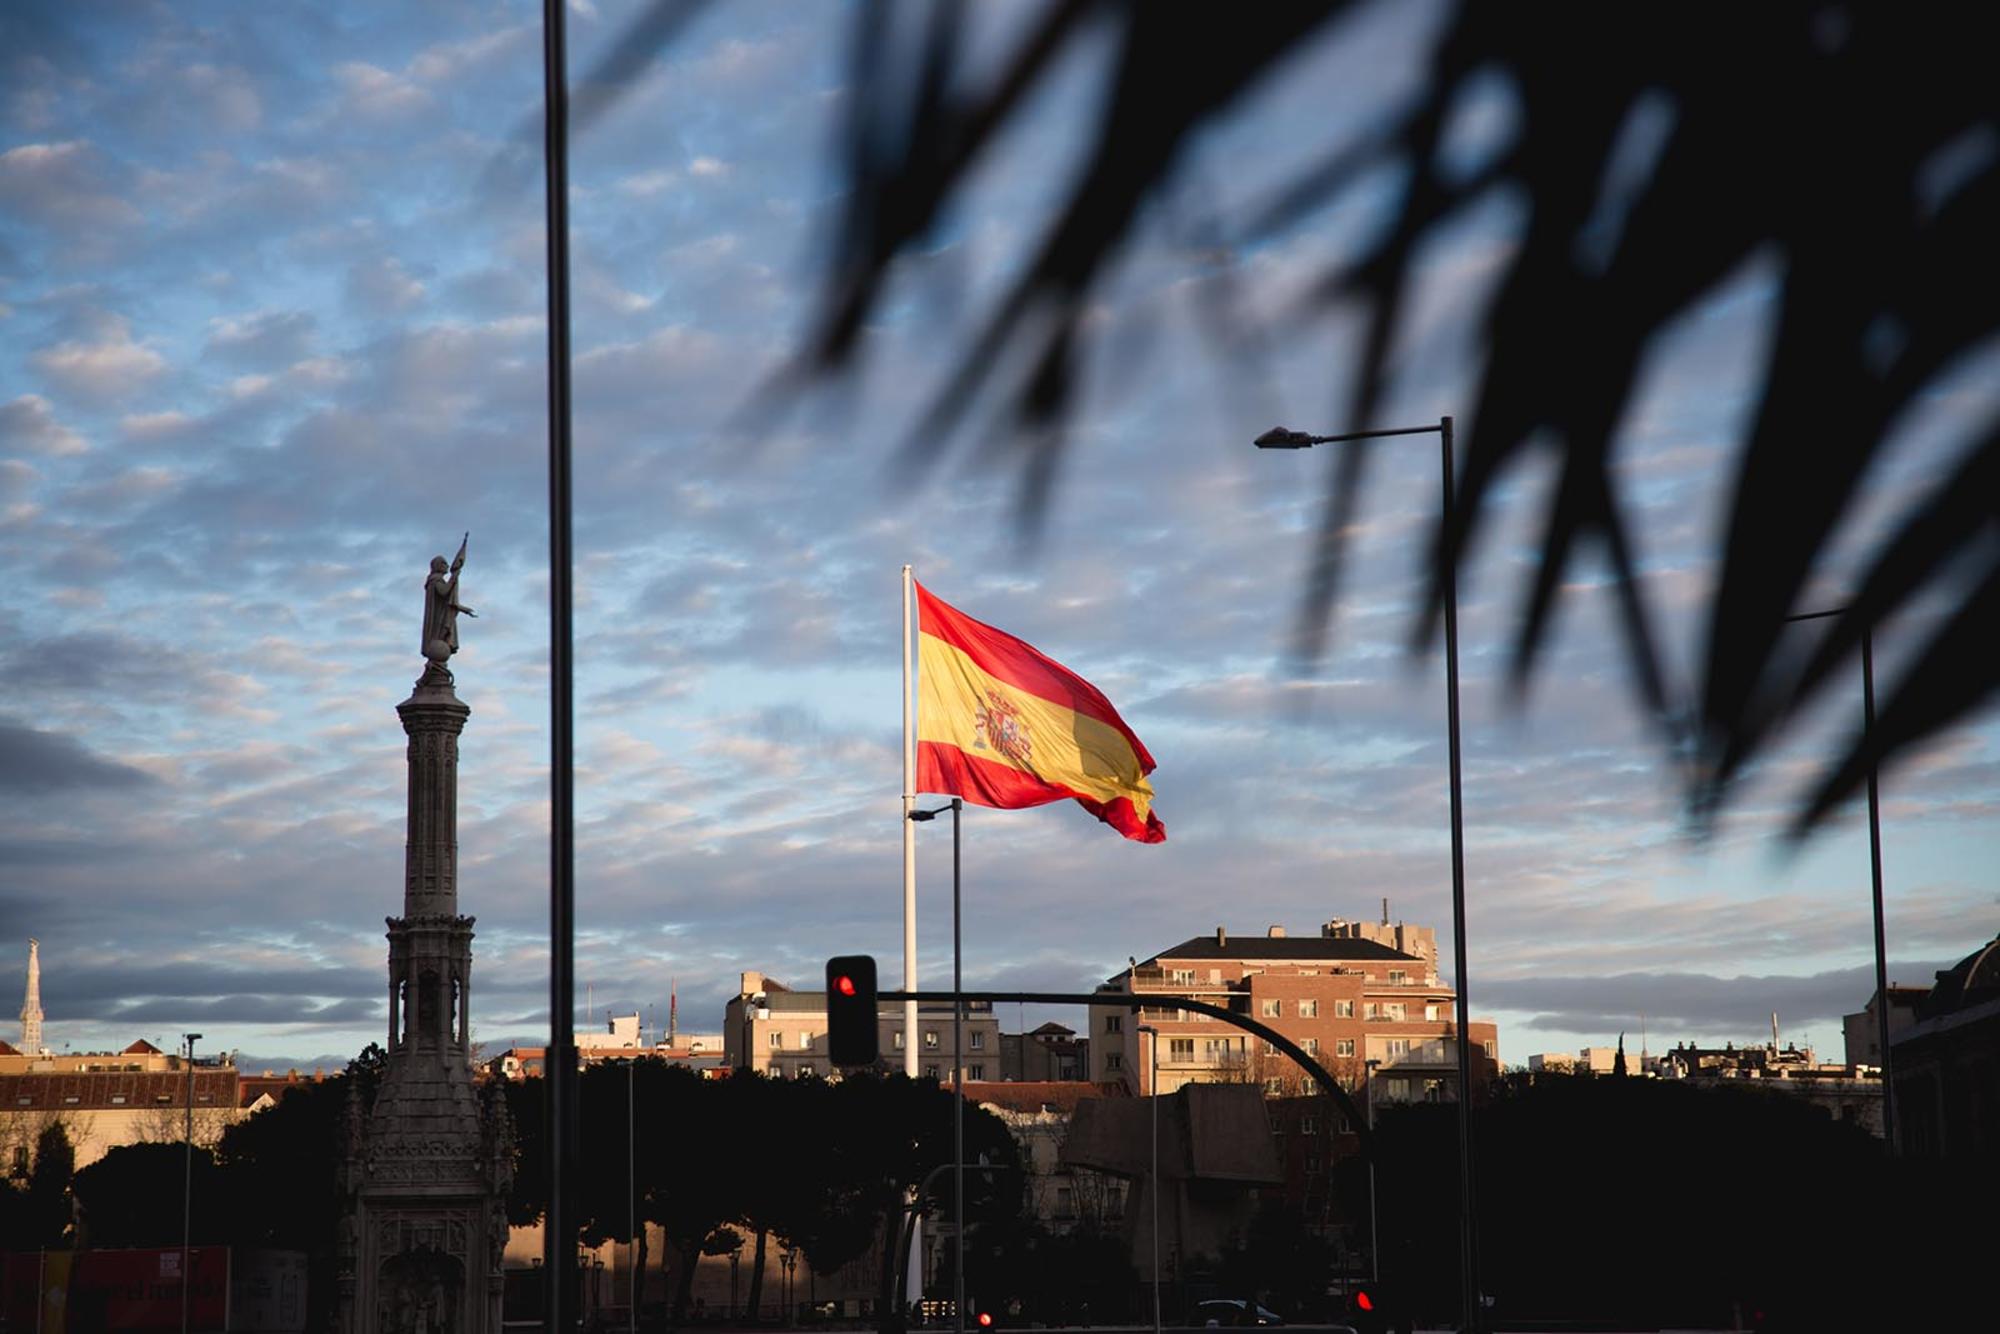 Bandera de España. Plaza de Colón. Madrid